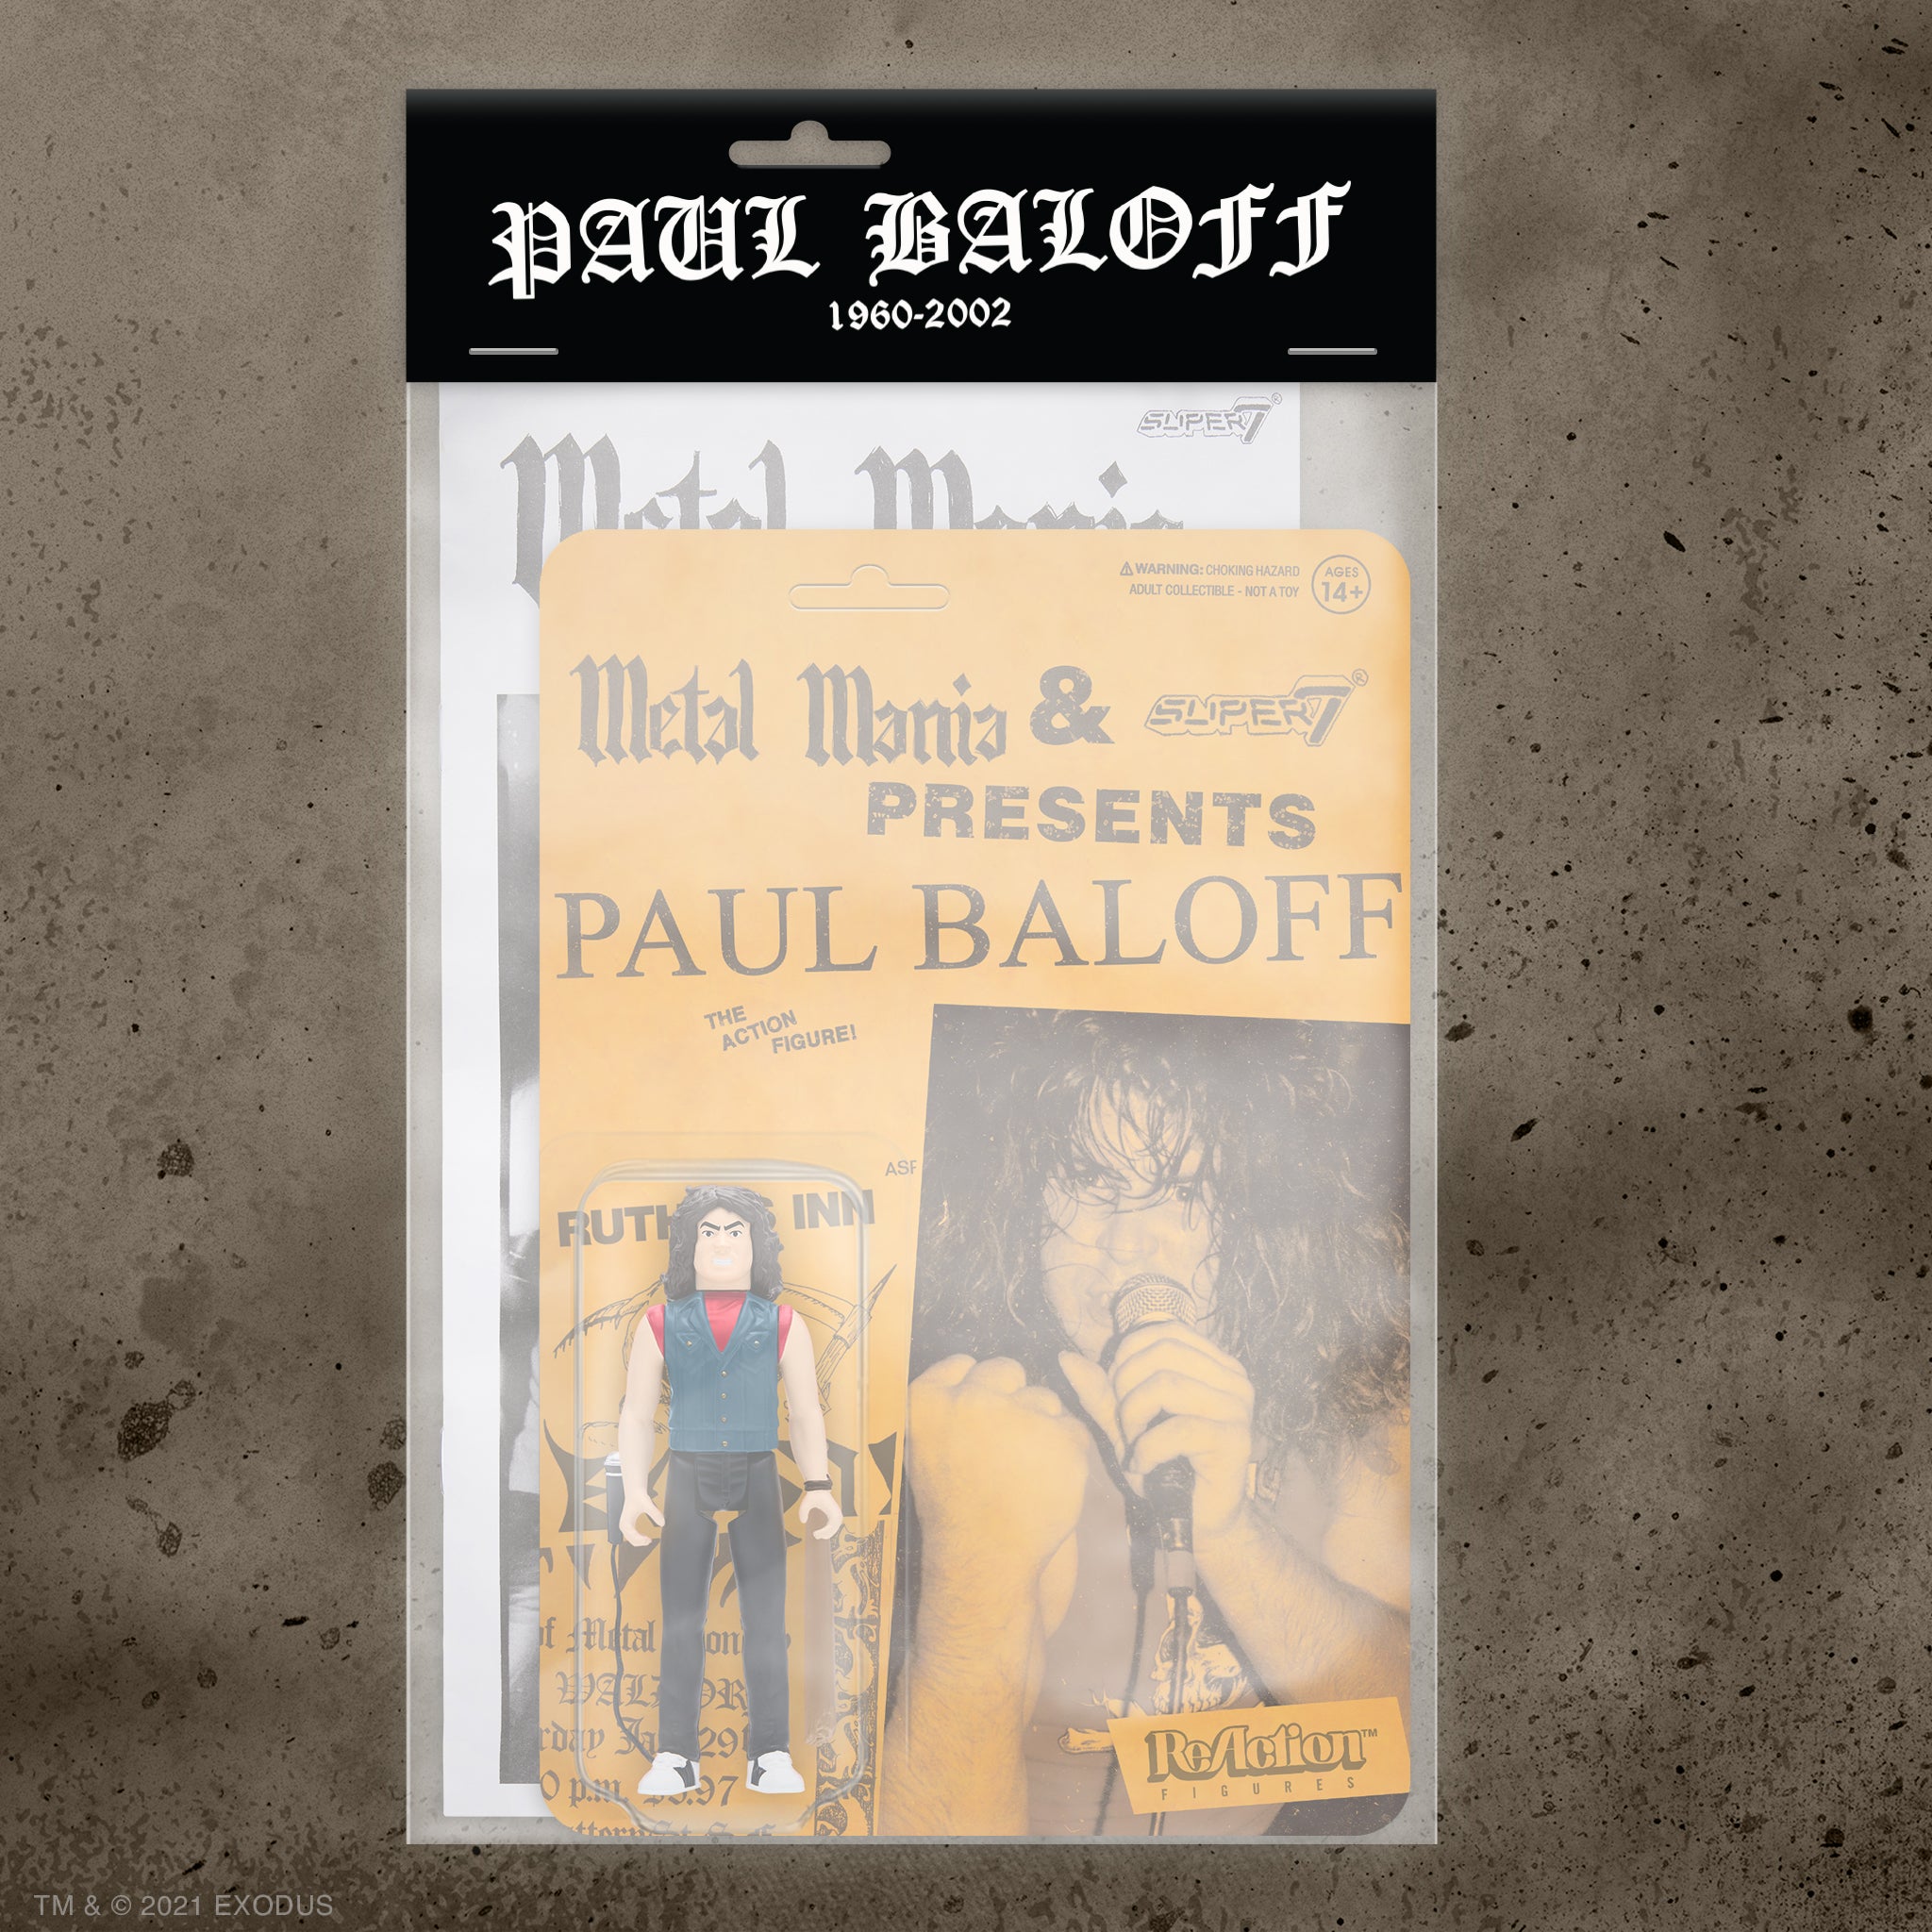 Paul Baloff ReAction Figure - Metal Mania Fanzine Bundle